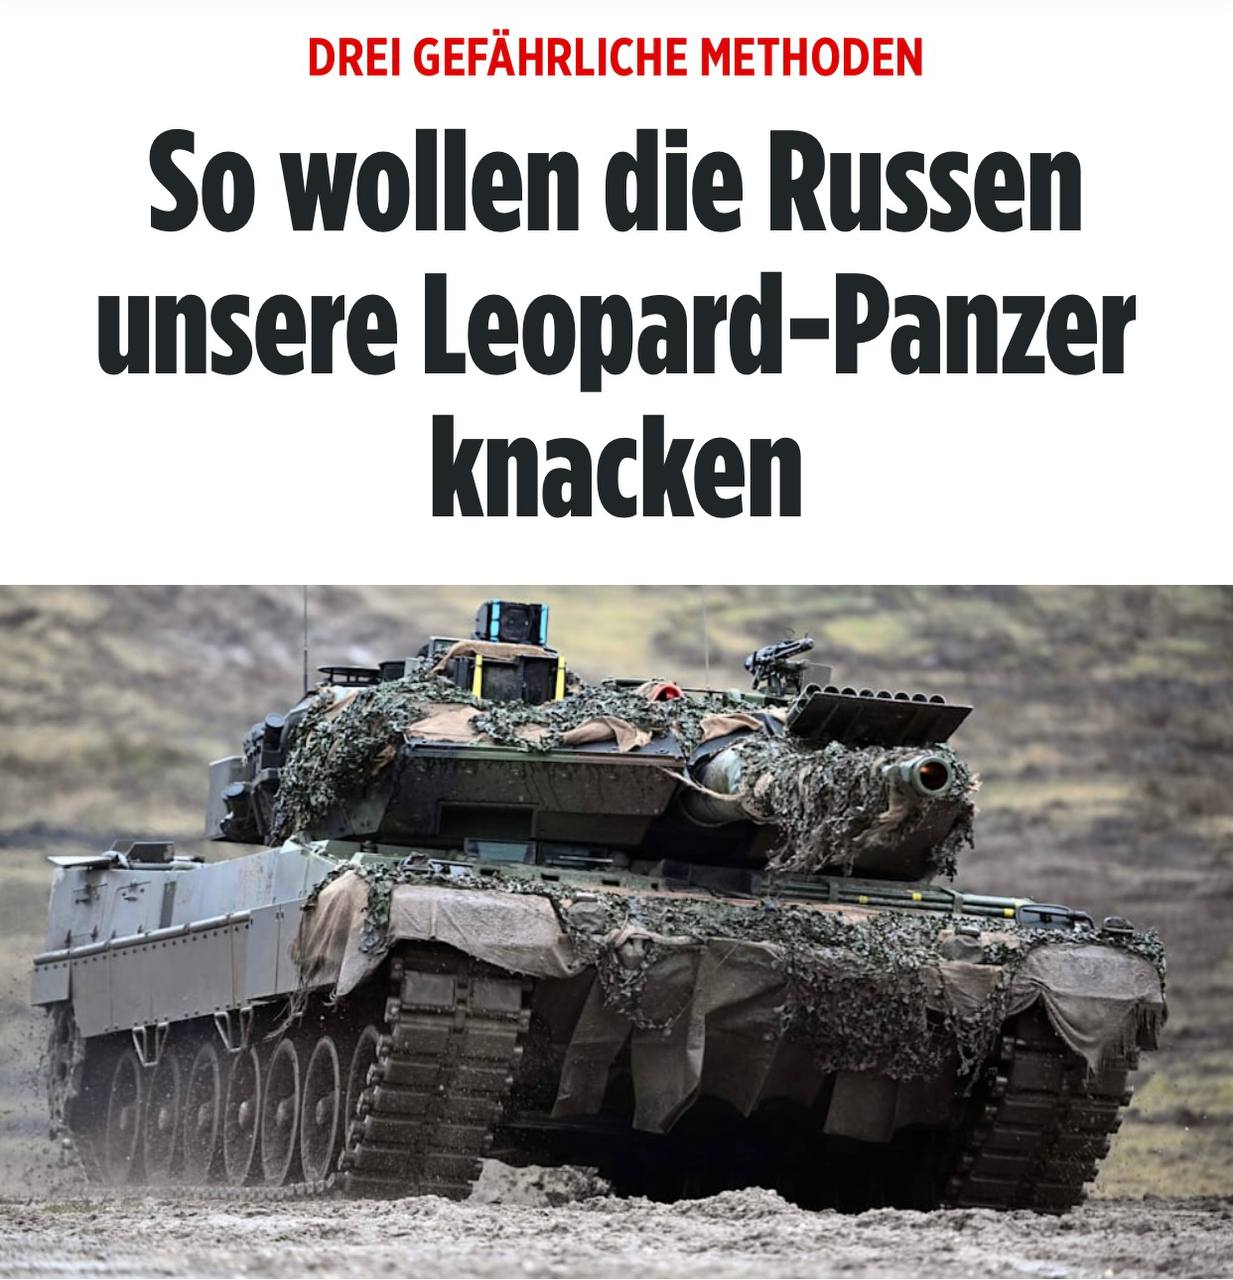 Bild неожиданно рассказал, что немецкие танки на Украине не ждет ничего хорошего